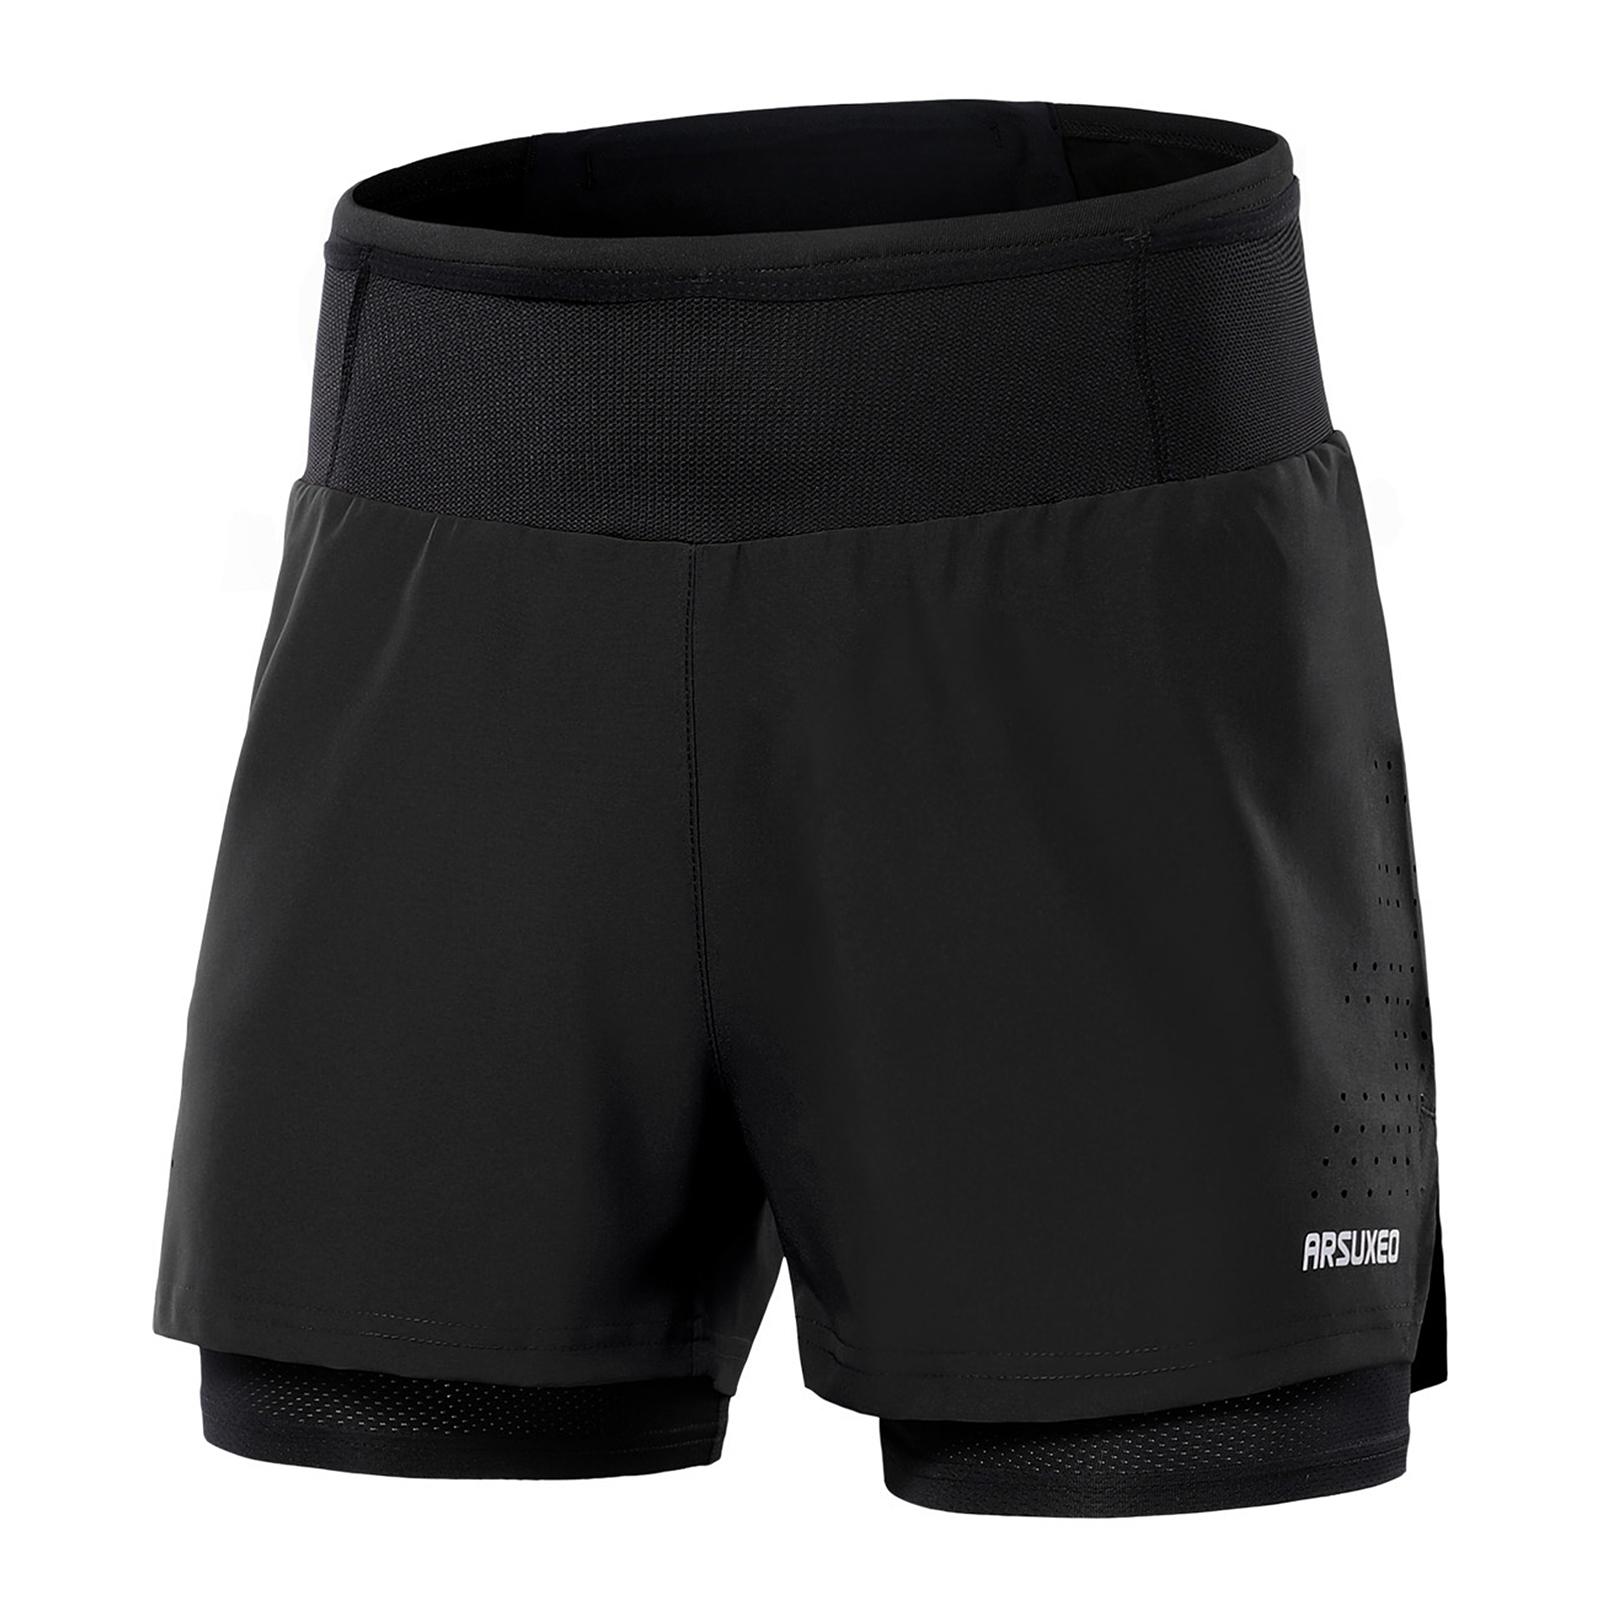 TOMTOP JMS Heren 2 in 1 hardloopshorts Atletische shorts met hoge taille Sportshorts Trainingsshorts met zakken voor